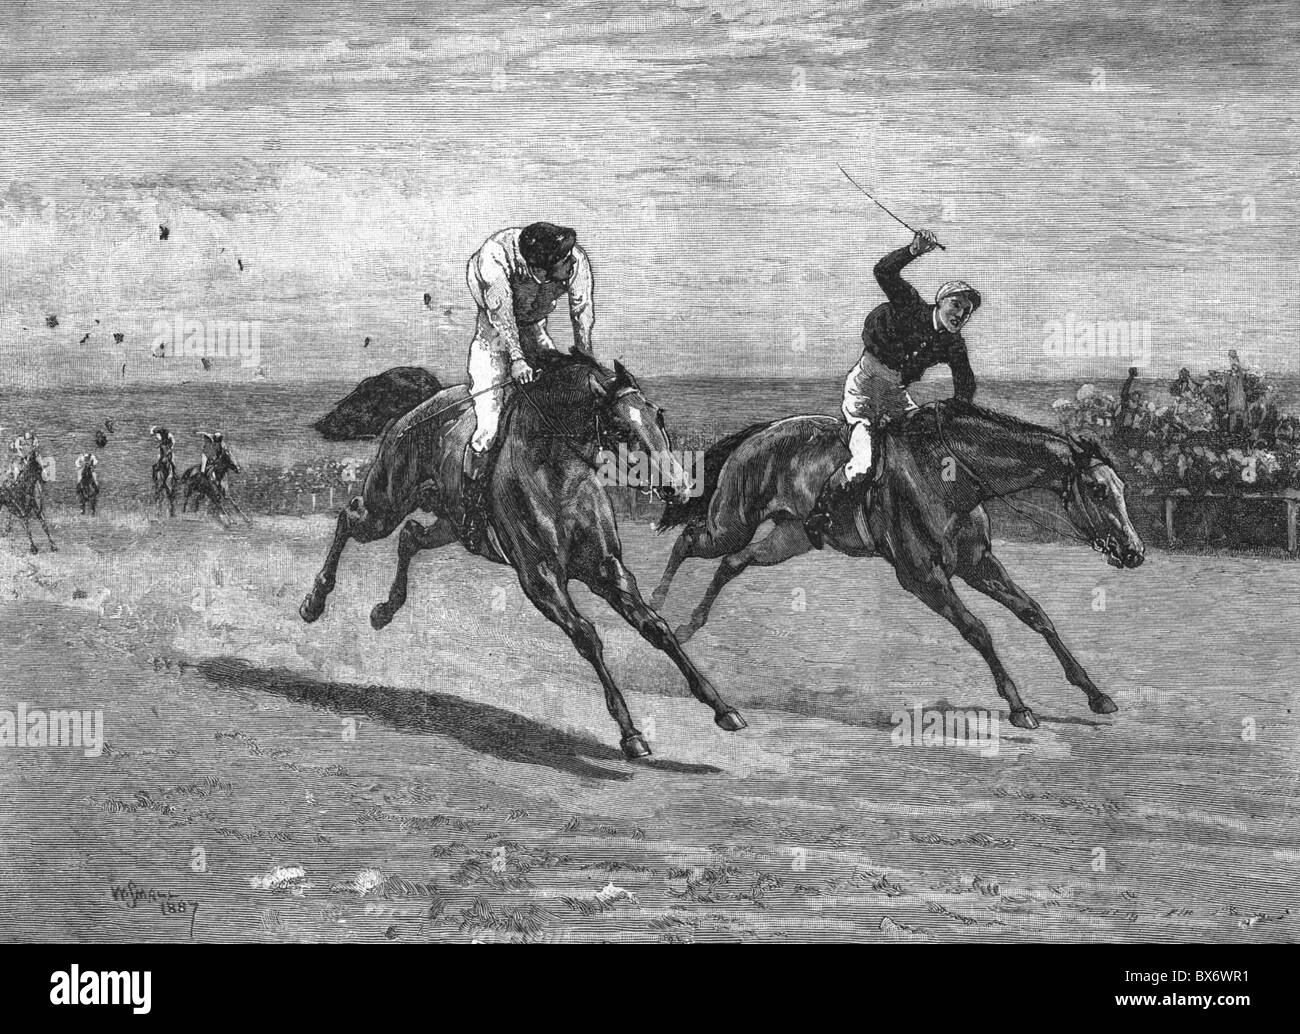 Sports, équitation, courses hippiques, gravure de bois après dessin par William Small, 1887, droits additionnels-Clearences-non disponible Banque D'Images